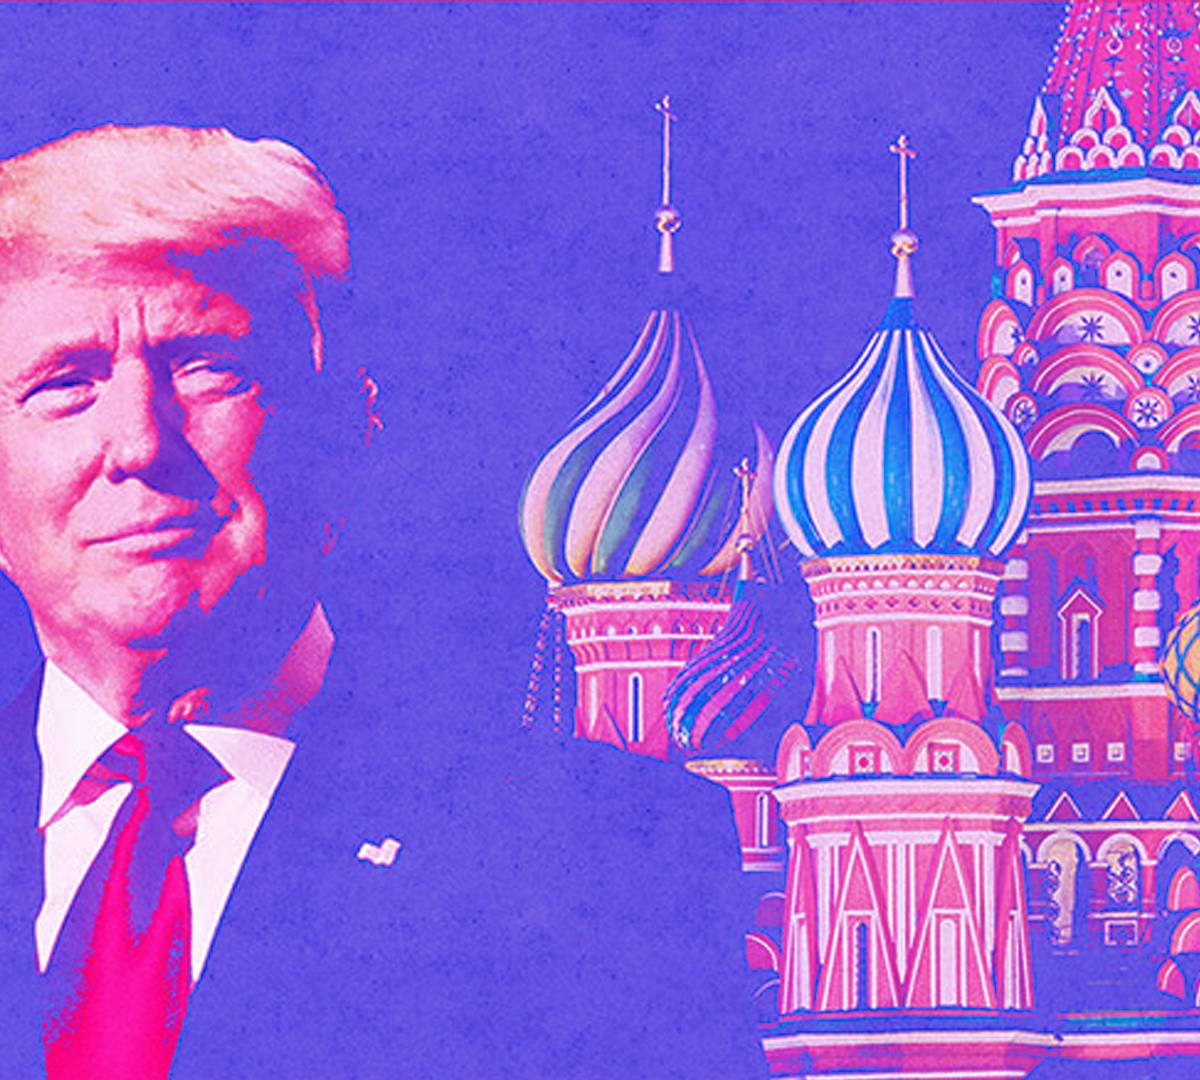 Трамп все равно агент или как Россия довела США до шизофрении